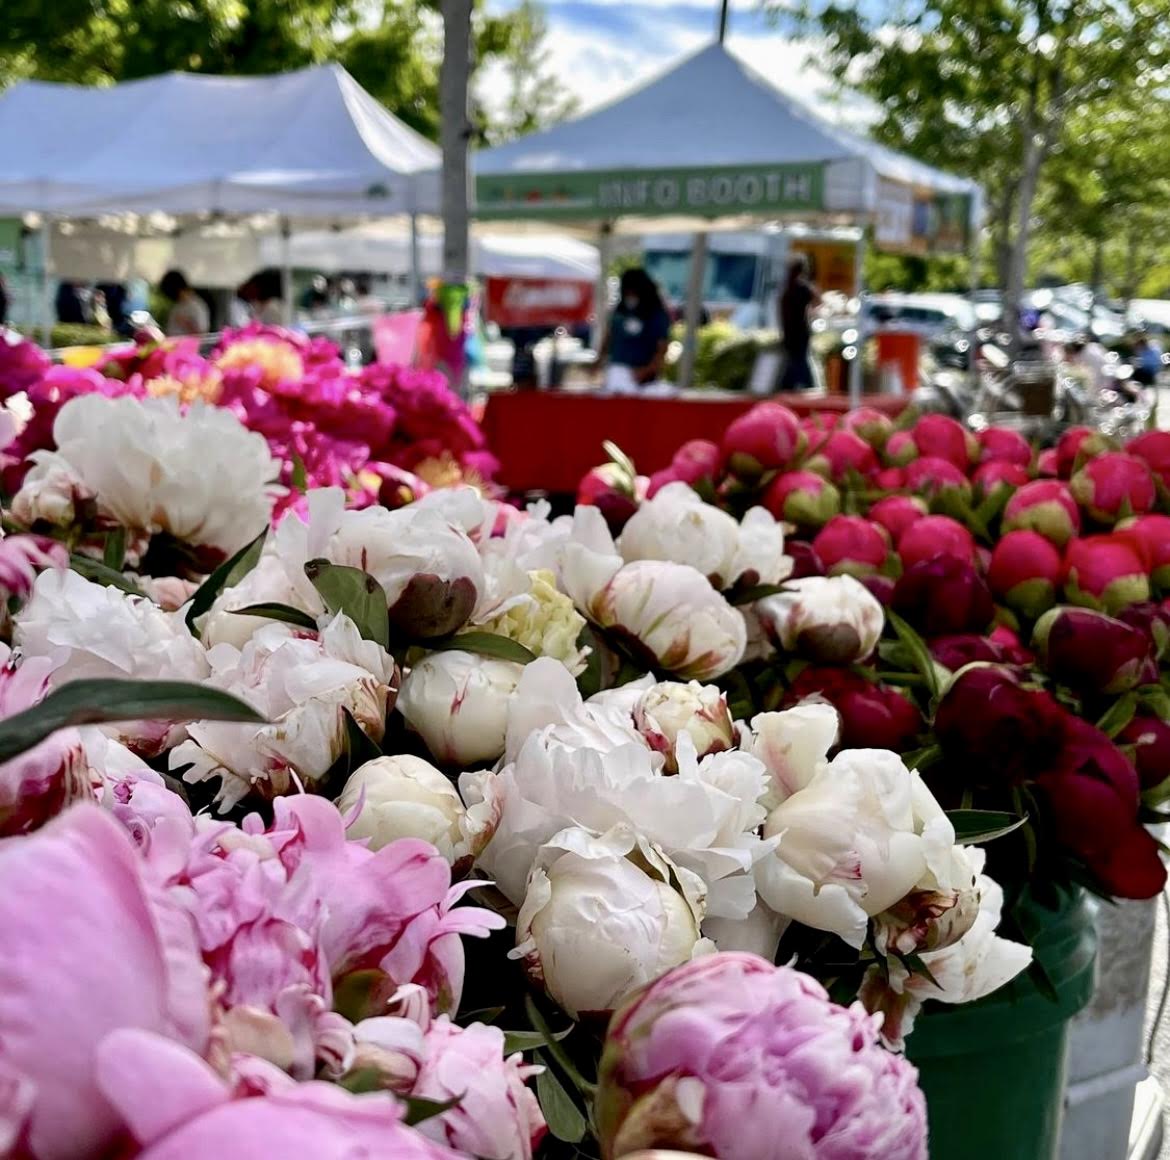 Bellevue Farmers Market to Open May 12